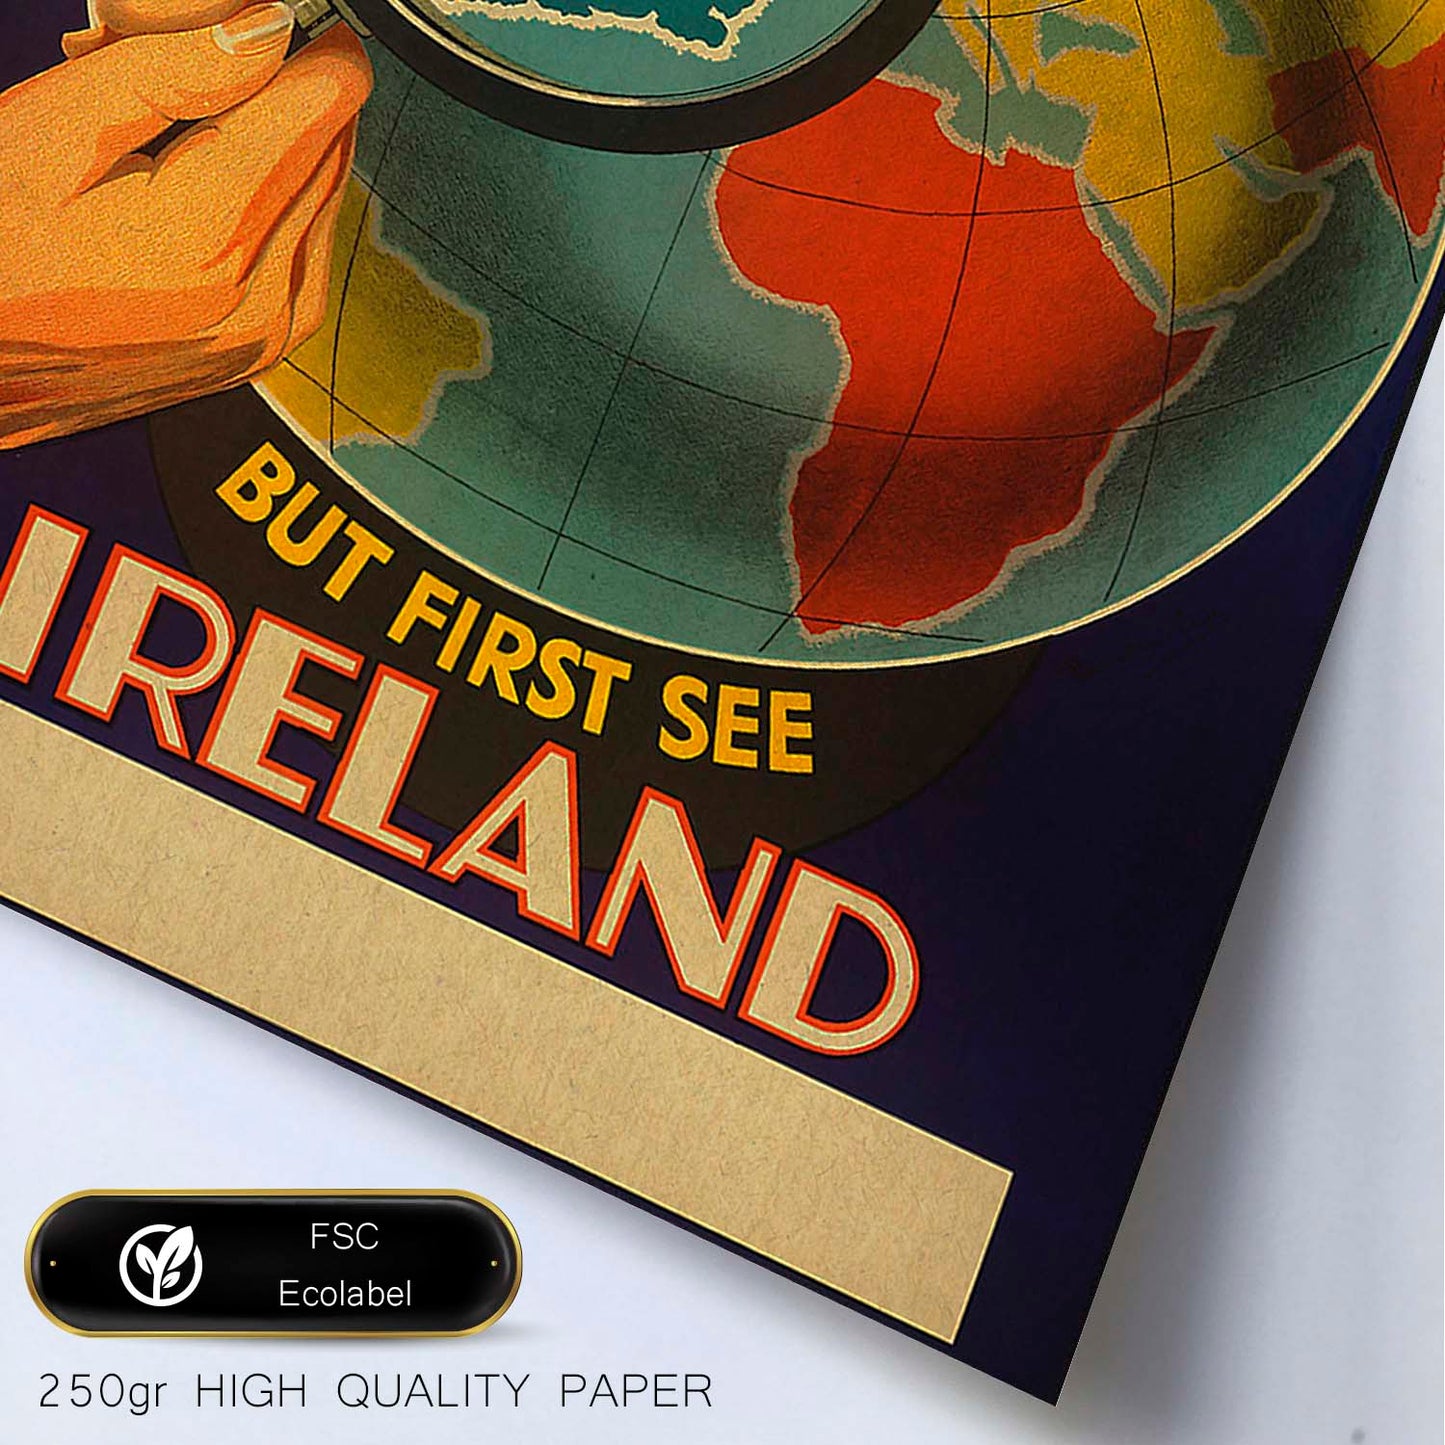 Poster vintage. Cartel vintage de Europa. Conoce Irlanda.-Artwork-Nacnic-Nacnic Estudio SL